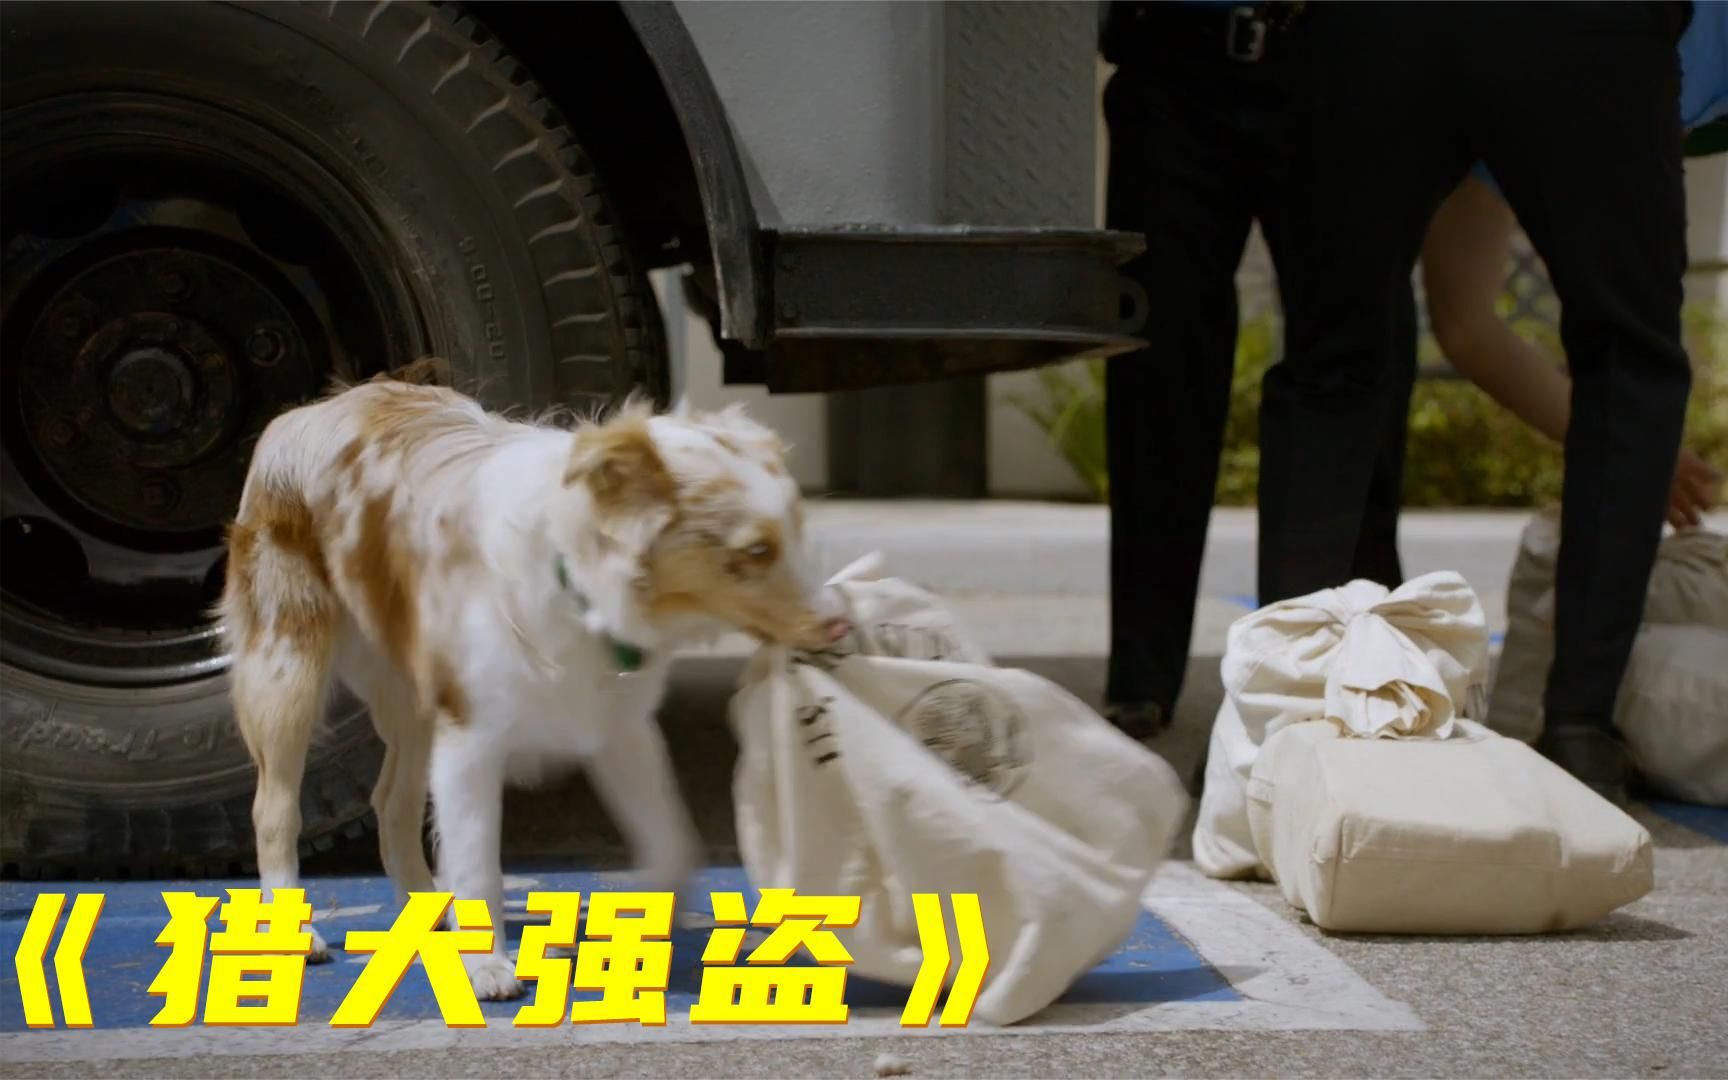 电影劫匪训练一只狗抢劫银行结果每次都能成功猎犬强盗